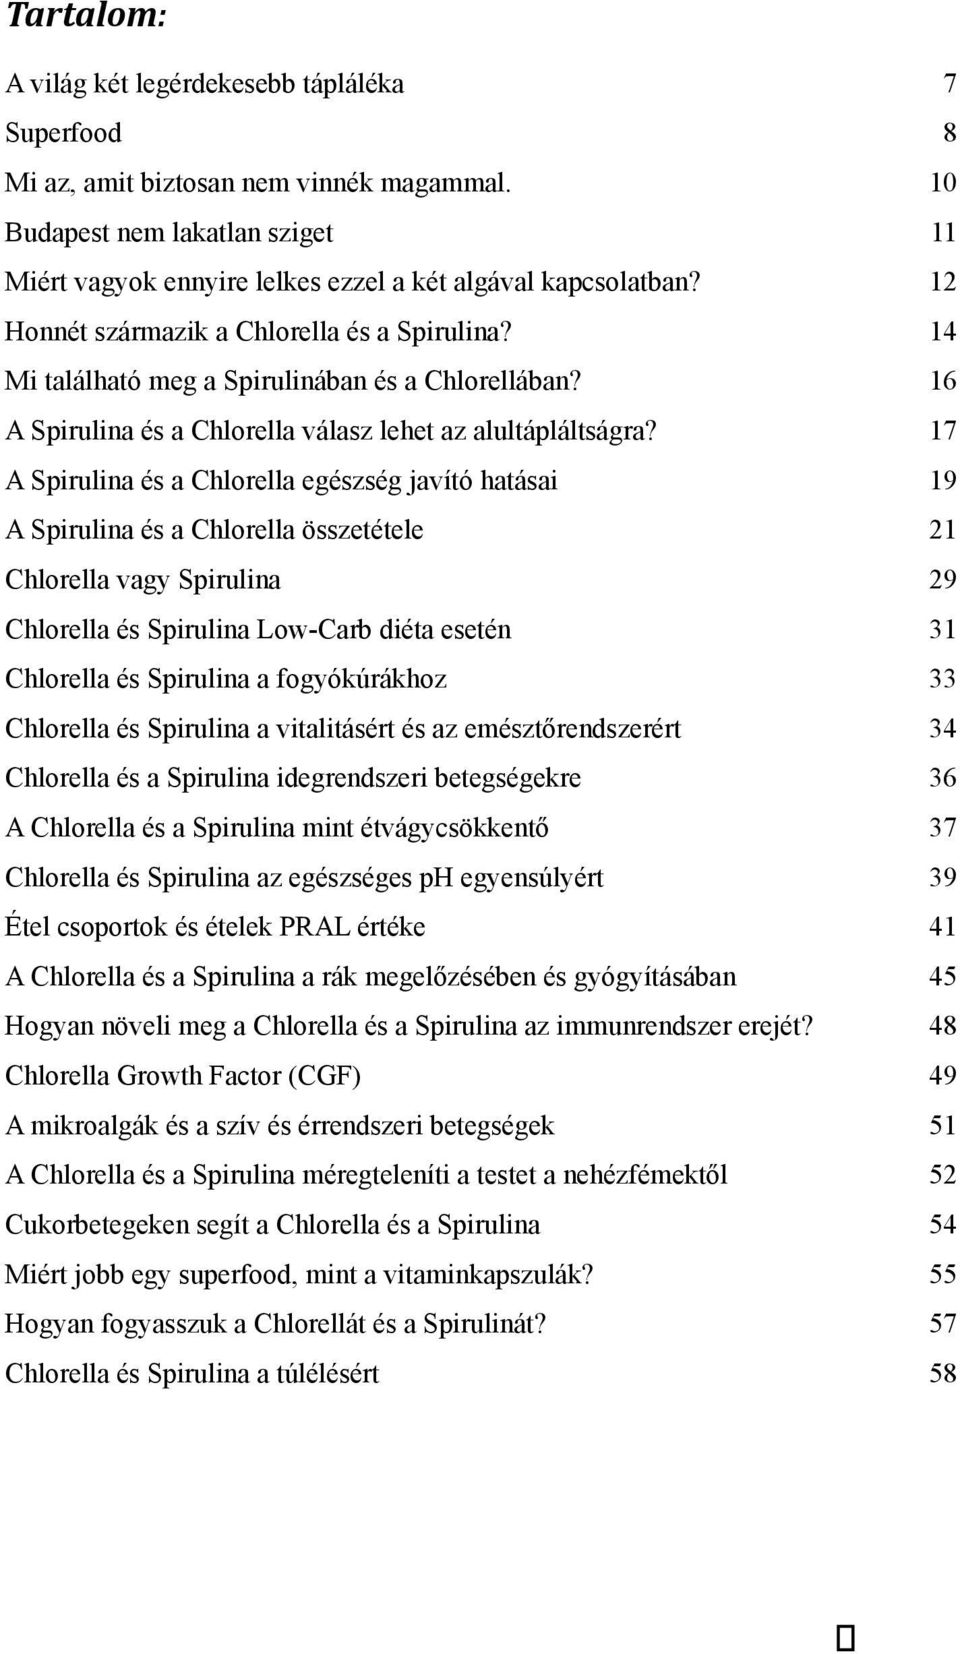 17 A Spirulina és a Chlorella egészség javító hatásai 19 A Spirulina és a Chlorella összetétele 21 Chlorella vagy Spirulina 29 Chlorella és Spirulina Low-Carb diéta esetén 31 Chlorella és Spirulina a